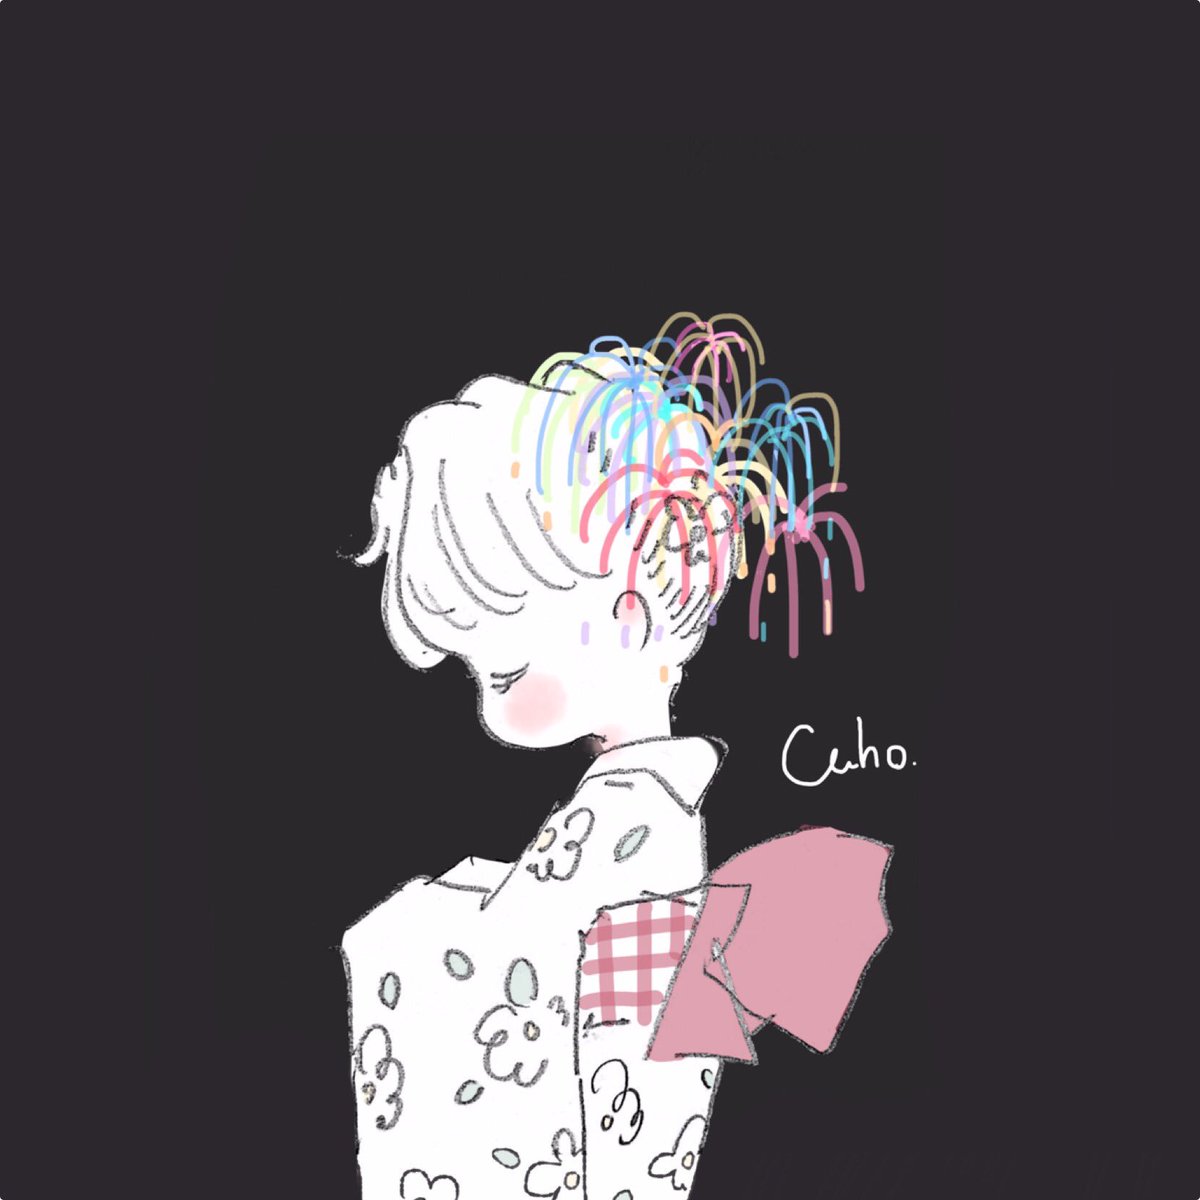 「花火の髪飾り? 」|Caho.のイラスト